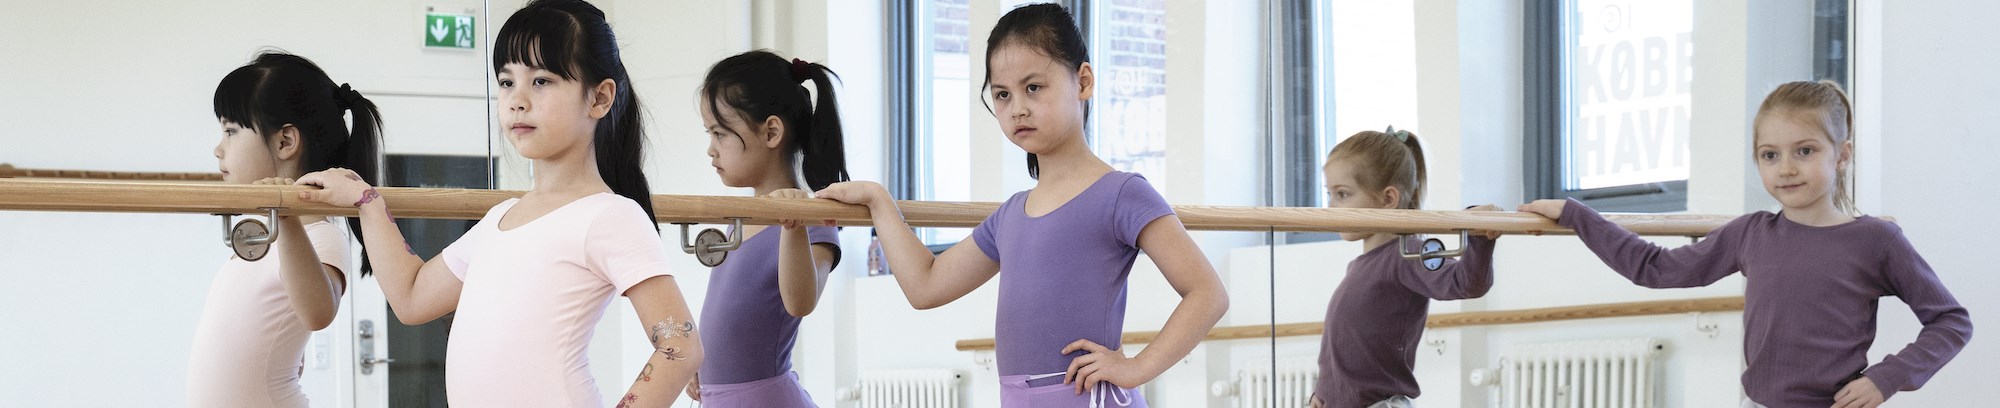 billede af tre piger der træner ballet